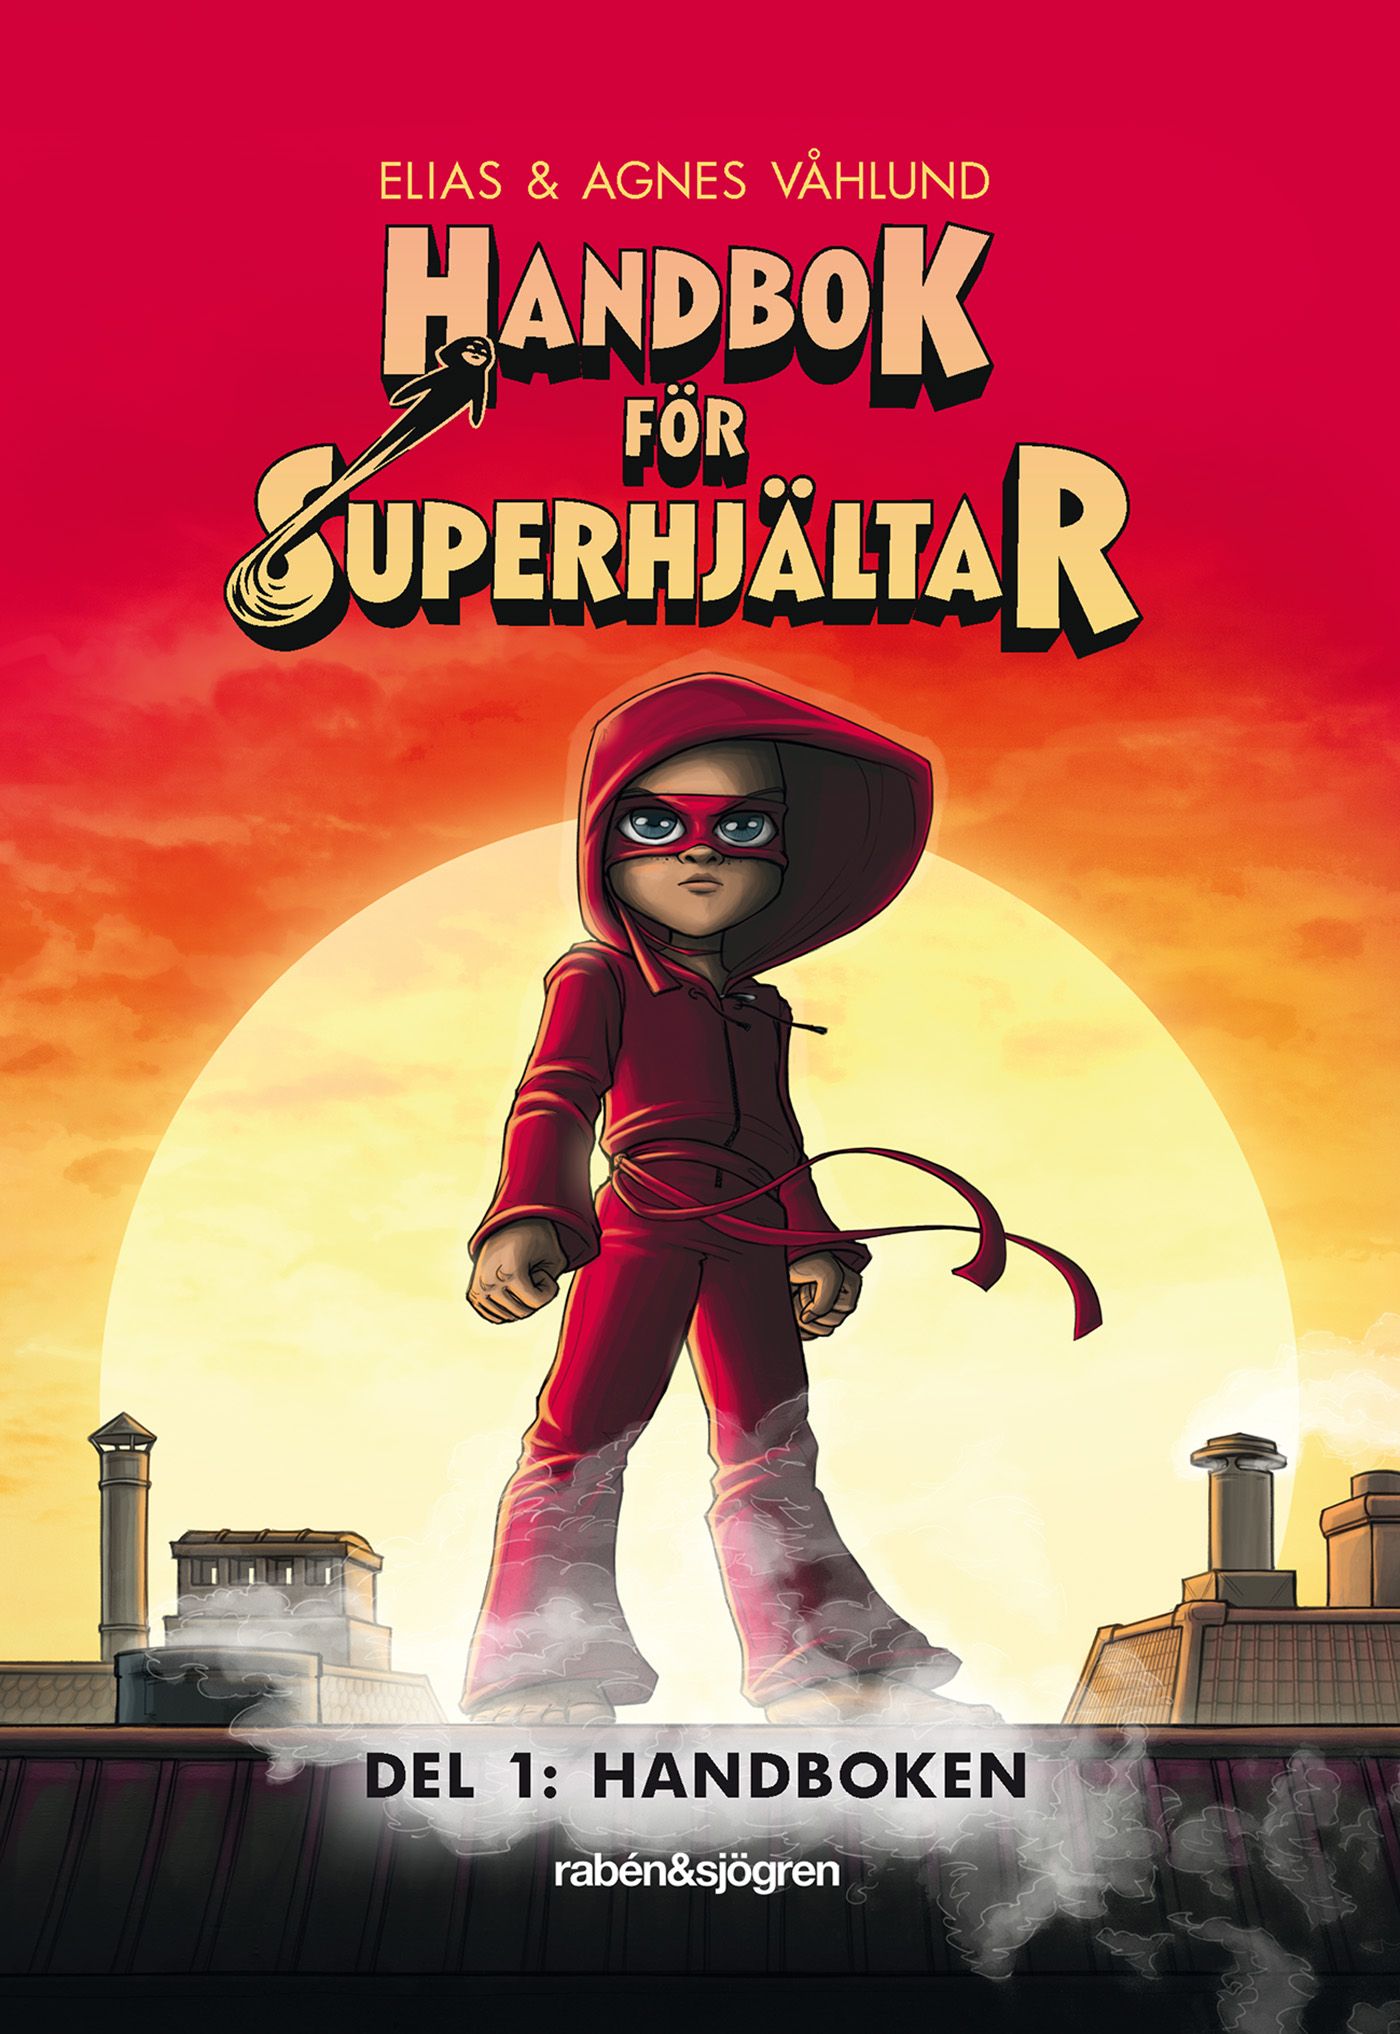 Handbok för superhjältar: Handboken, e-bok av Elias Våhlund